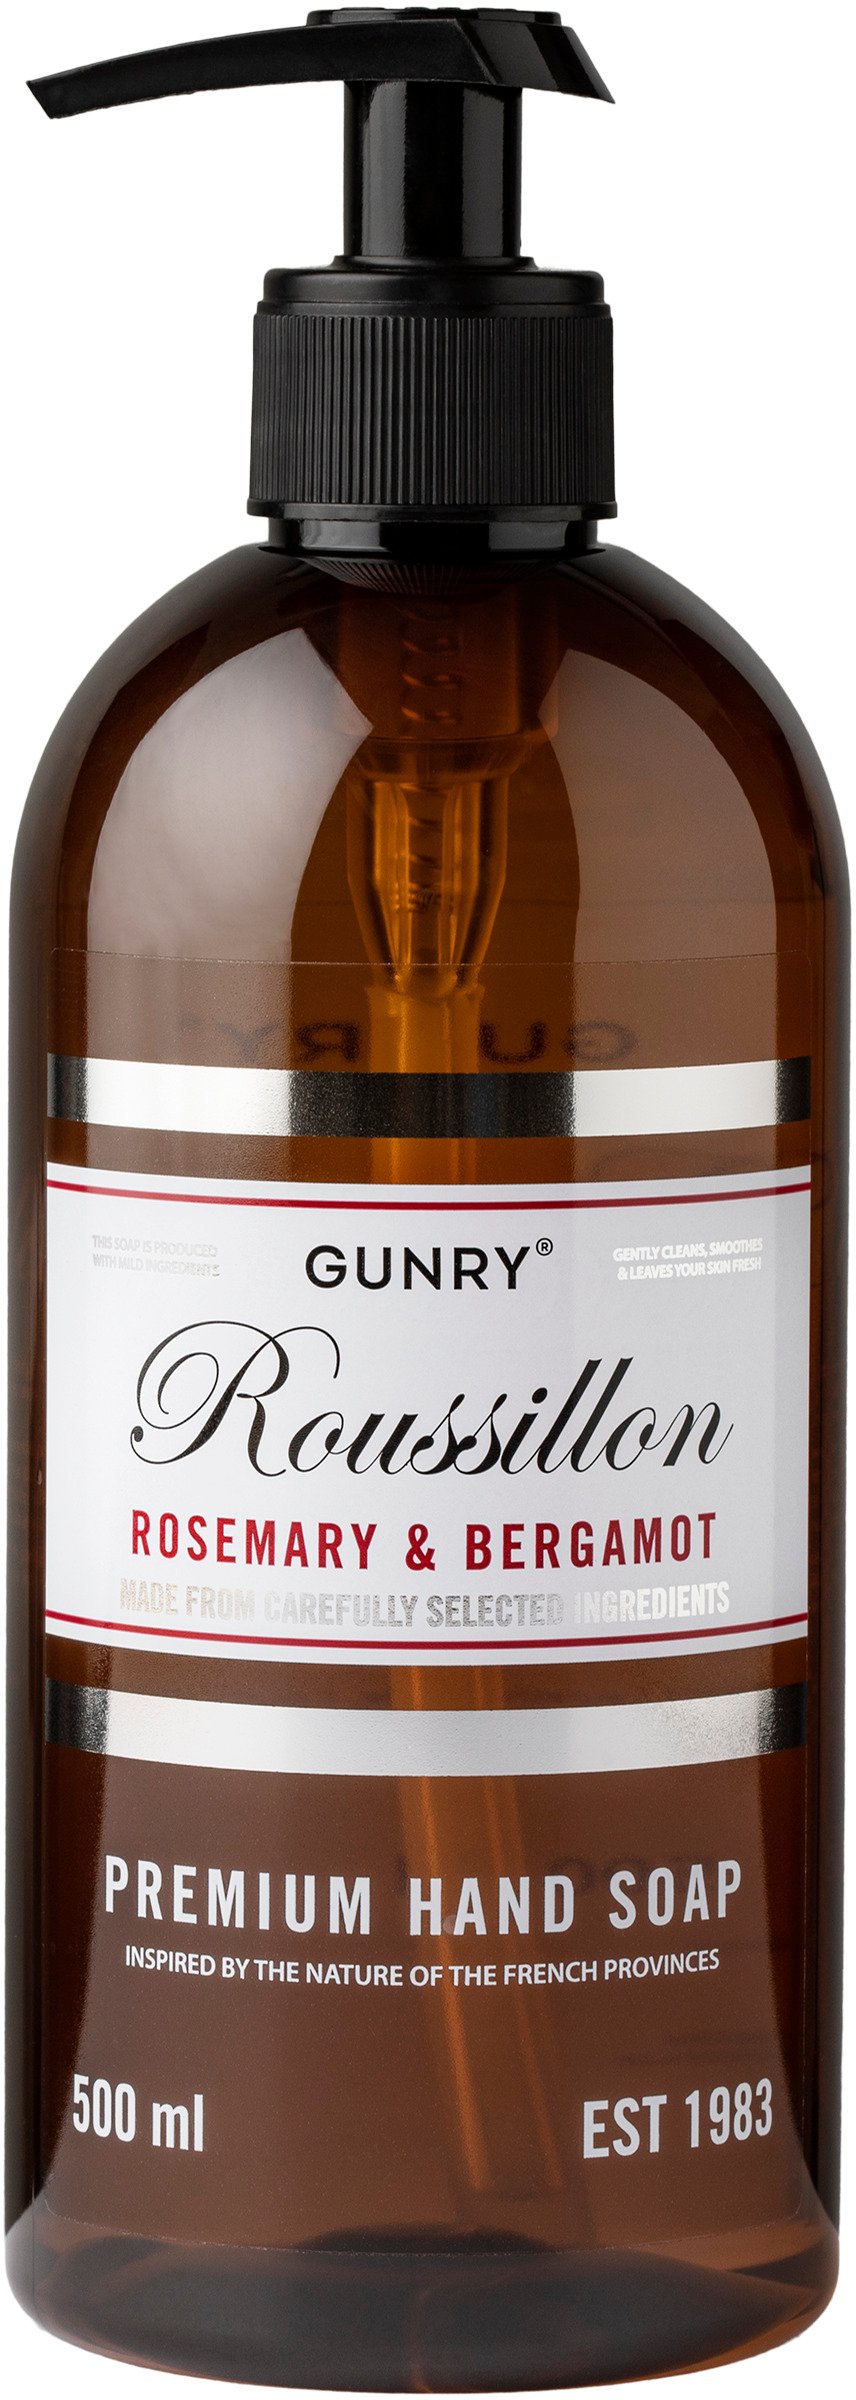 Gunry Gunry Rousillon Rosemary & Bergamot Premium Hand Soap